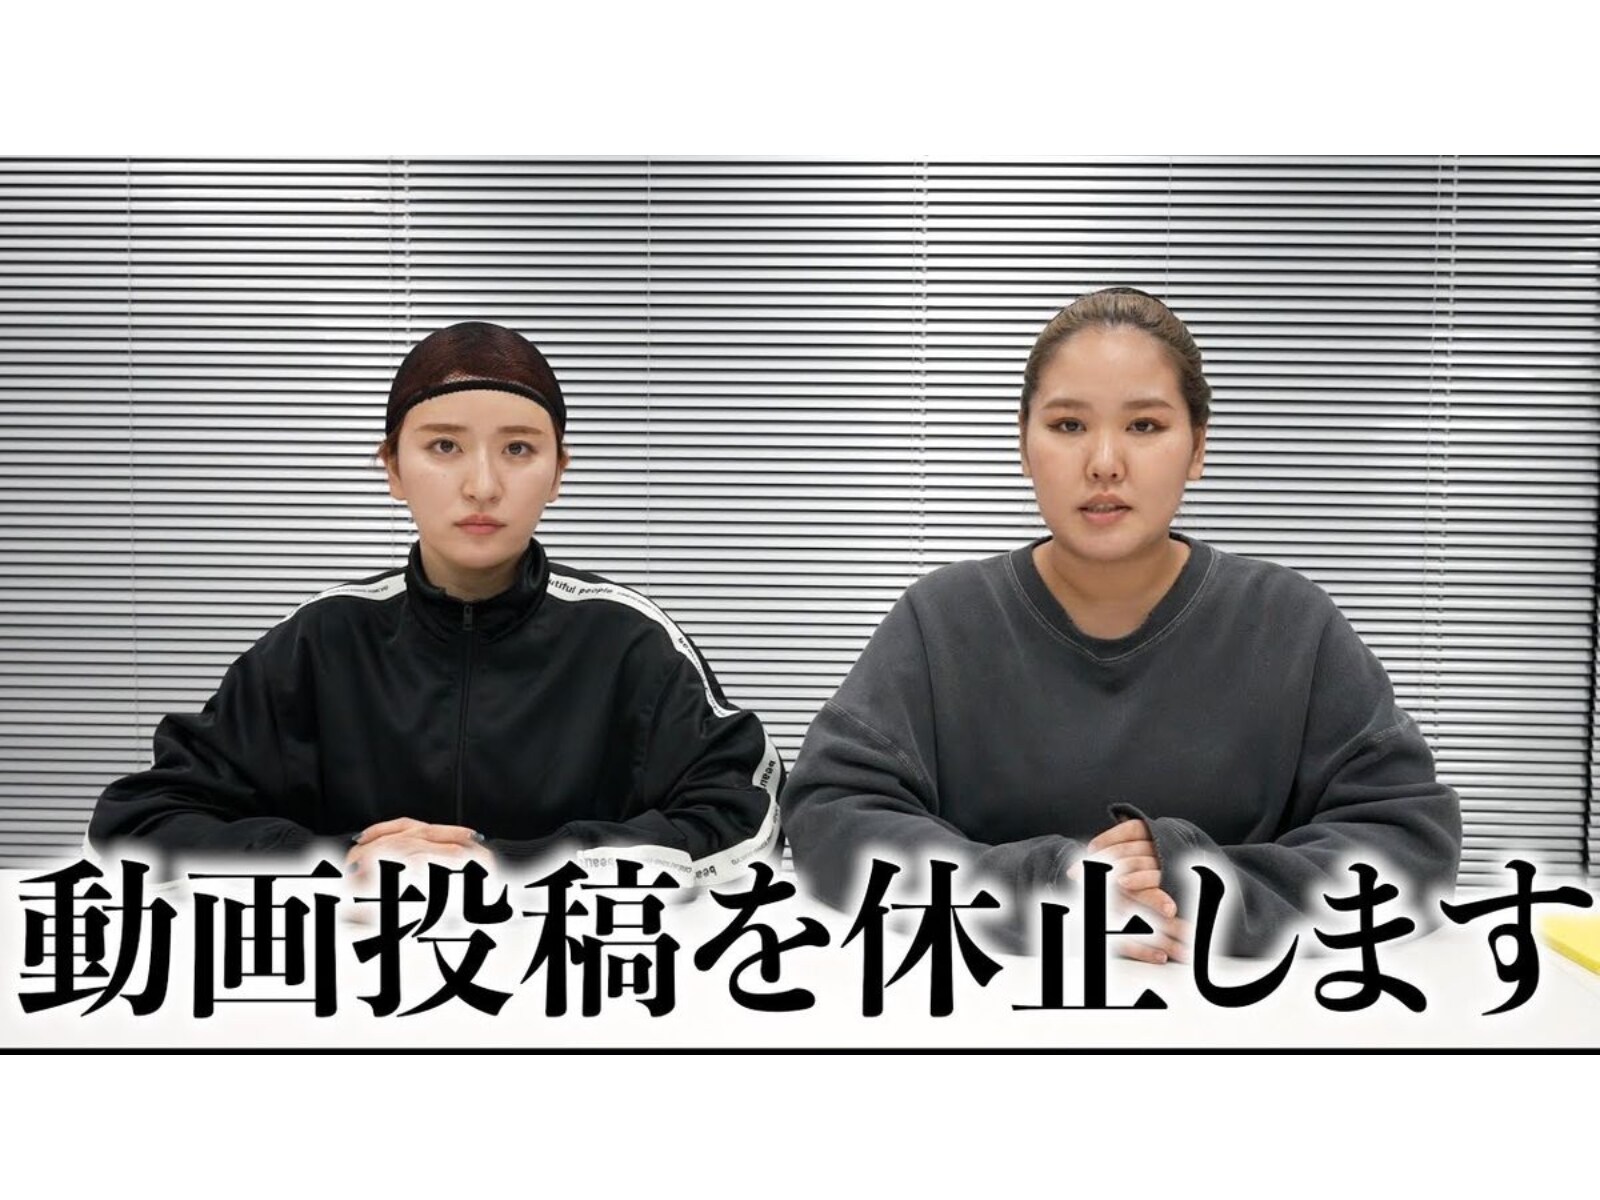 平成フラミンゴ、メインチャンネルの一時活動休止を発表「マイナスな意味は1ミリたりともございません」